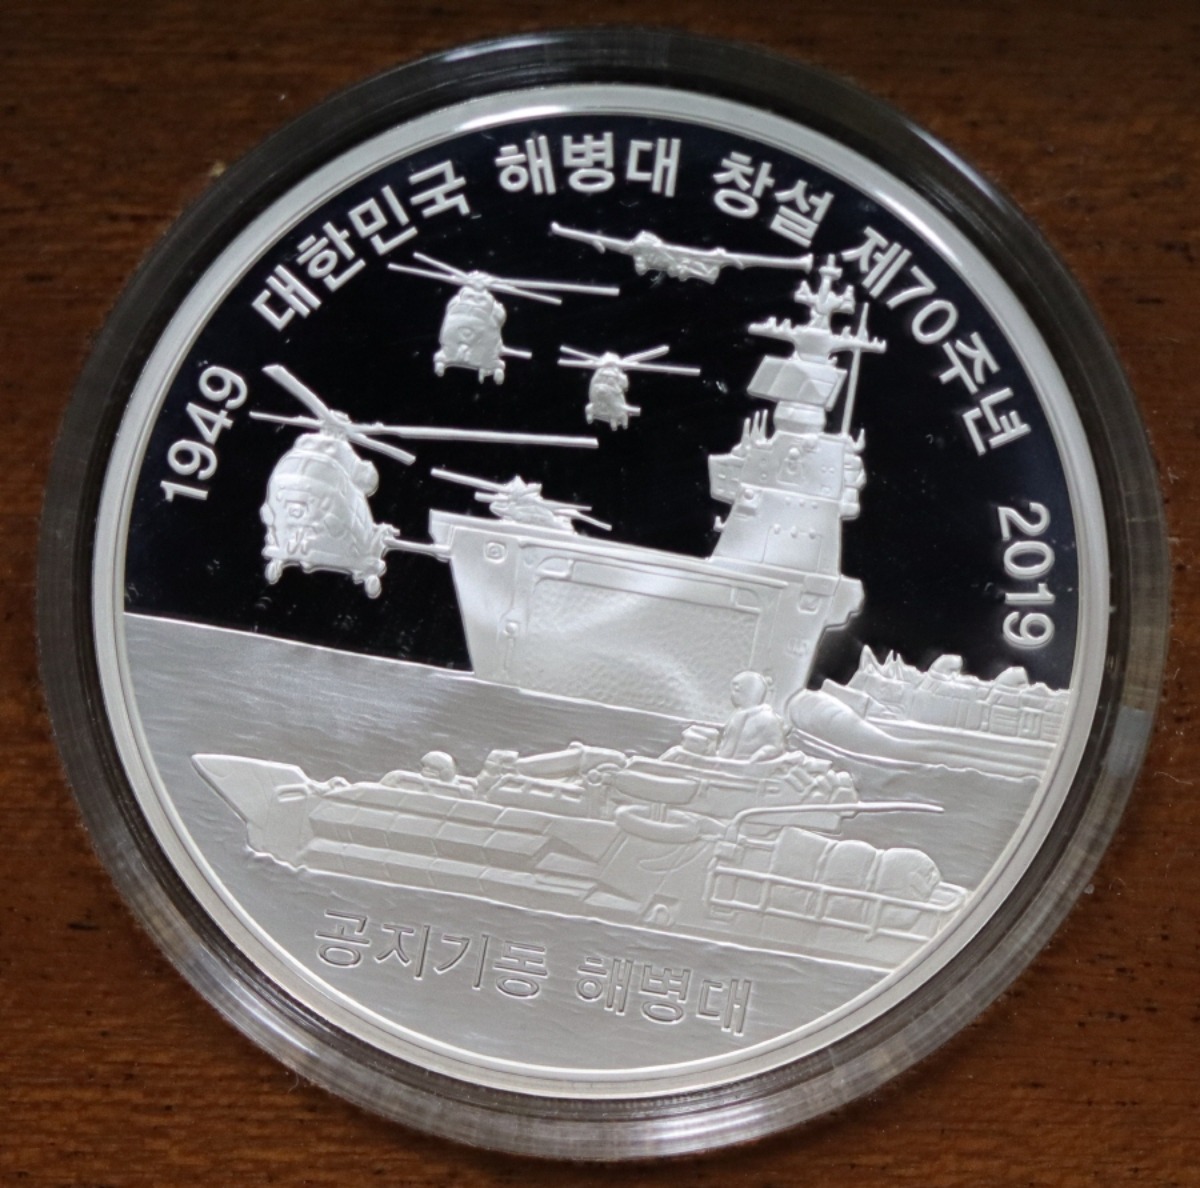 한국조폐공사 2019년 호국충성 해병대 창설 70주년 기념 은메달